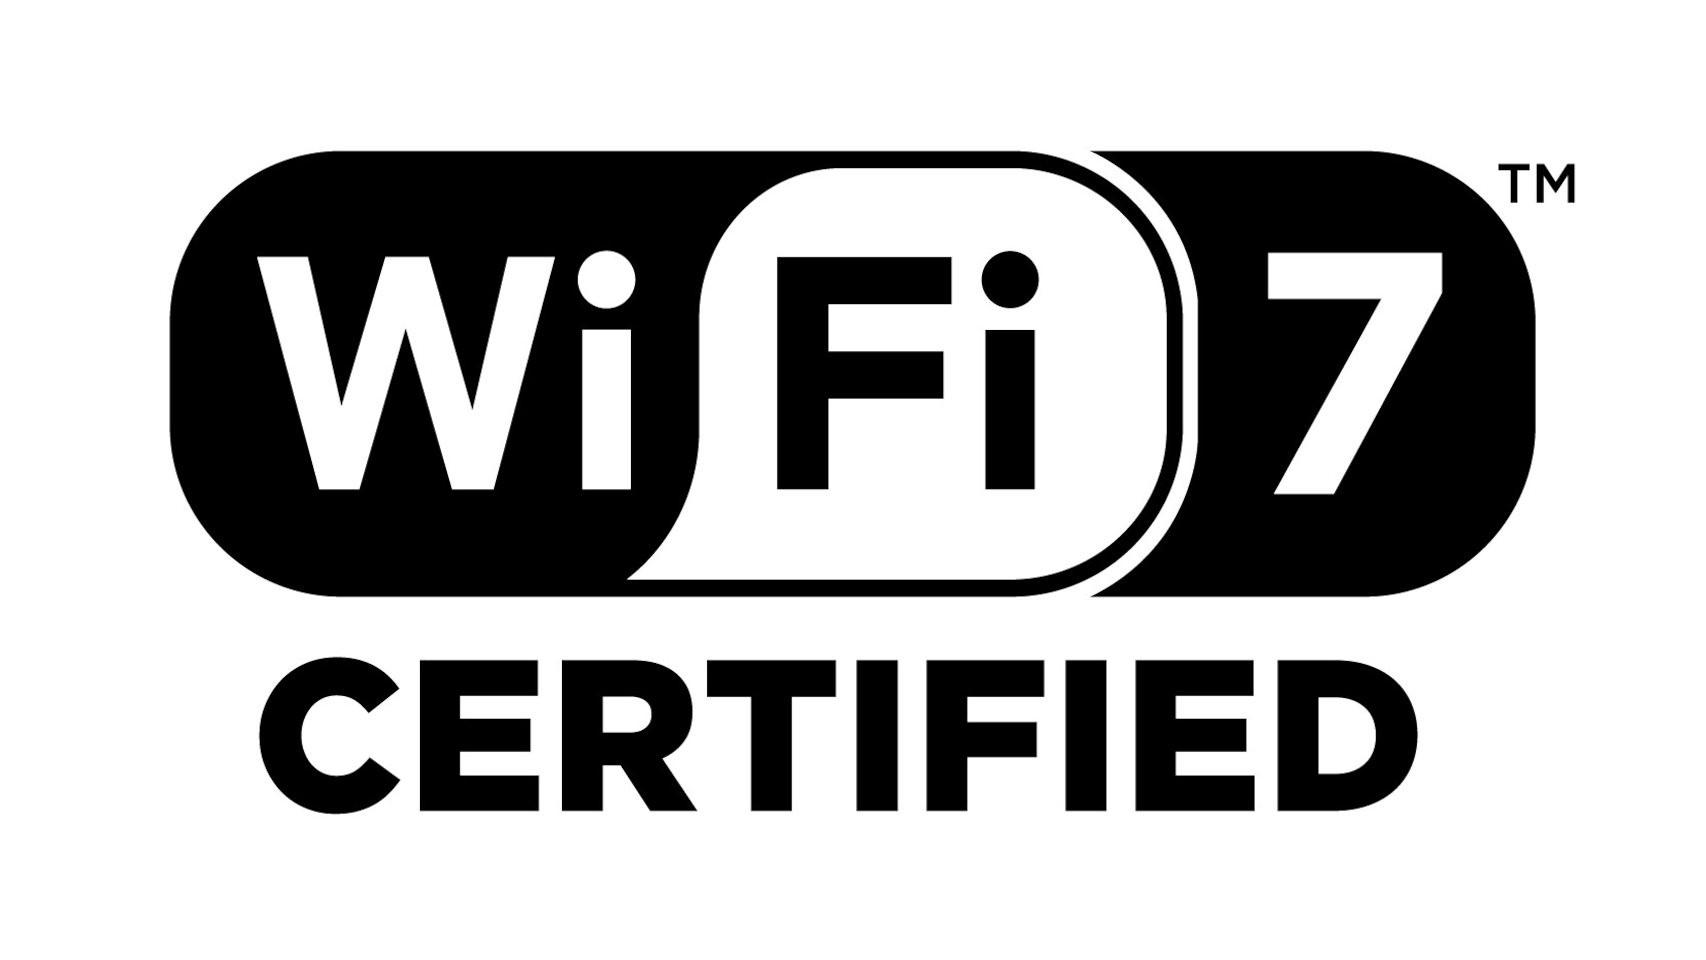 El sello que recibirán los productos certificados para WiFi 7